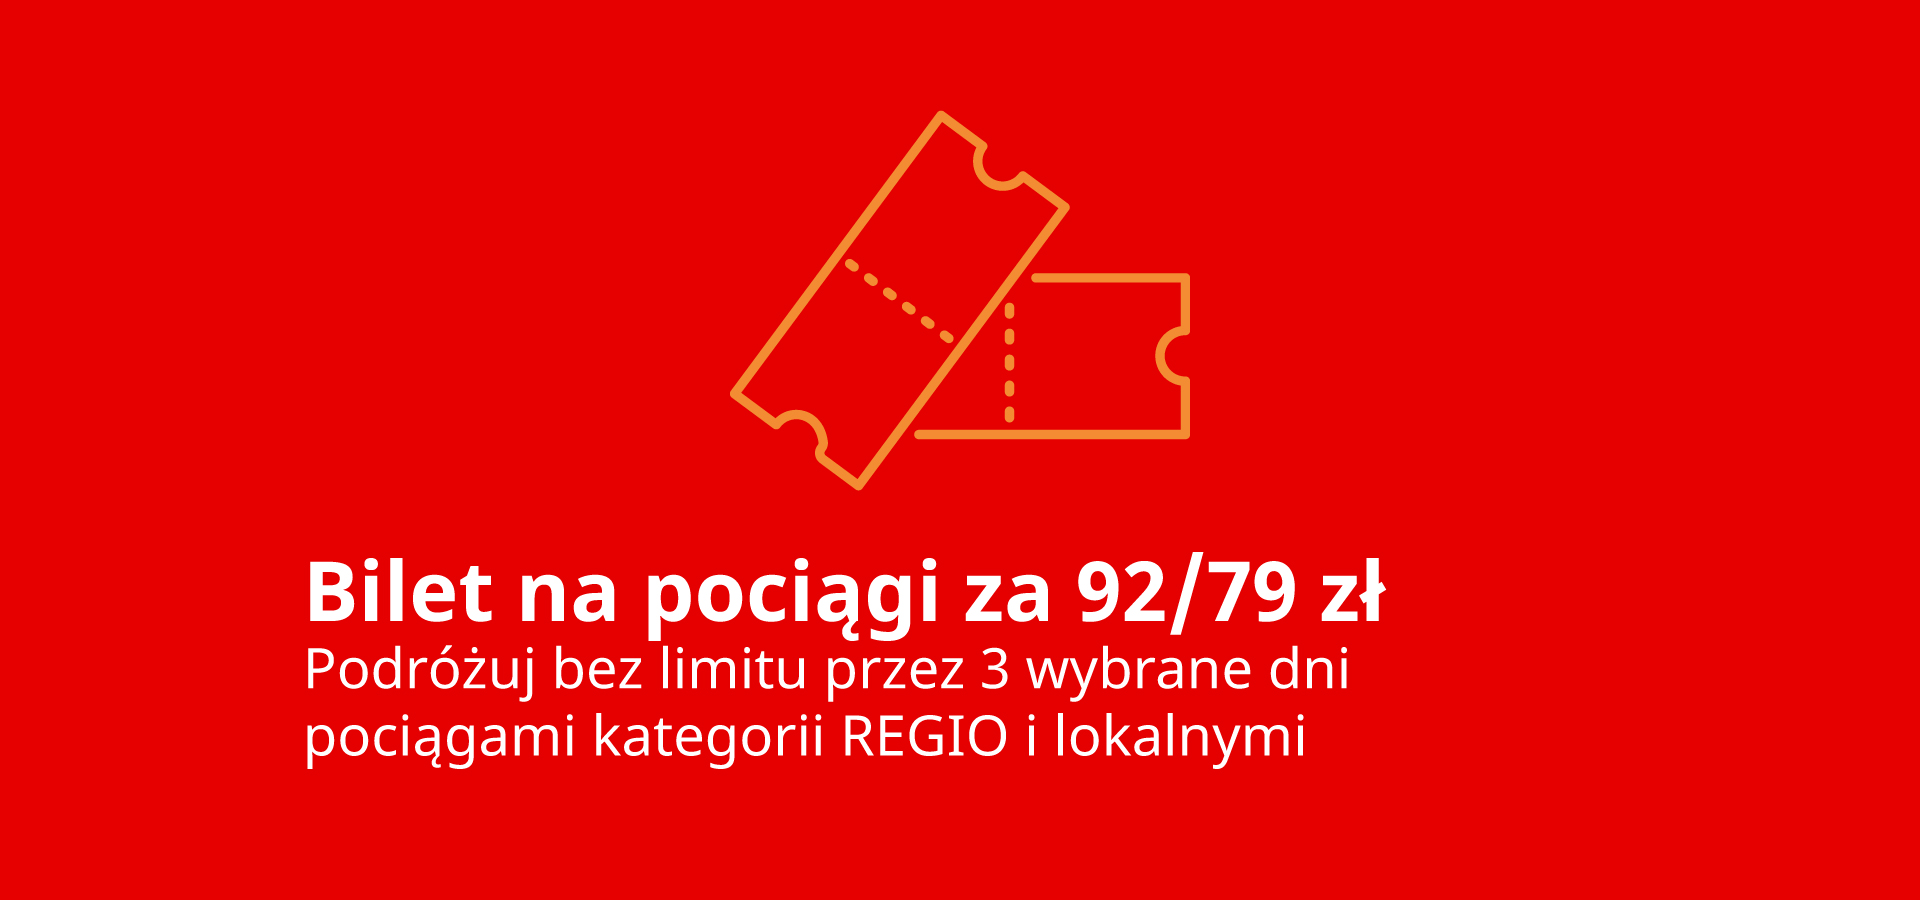 REGIOkarnet - jeden bilet na podróże po całej Polsce. Trzy dni bez ograniczeń!